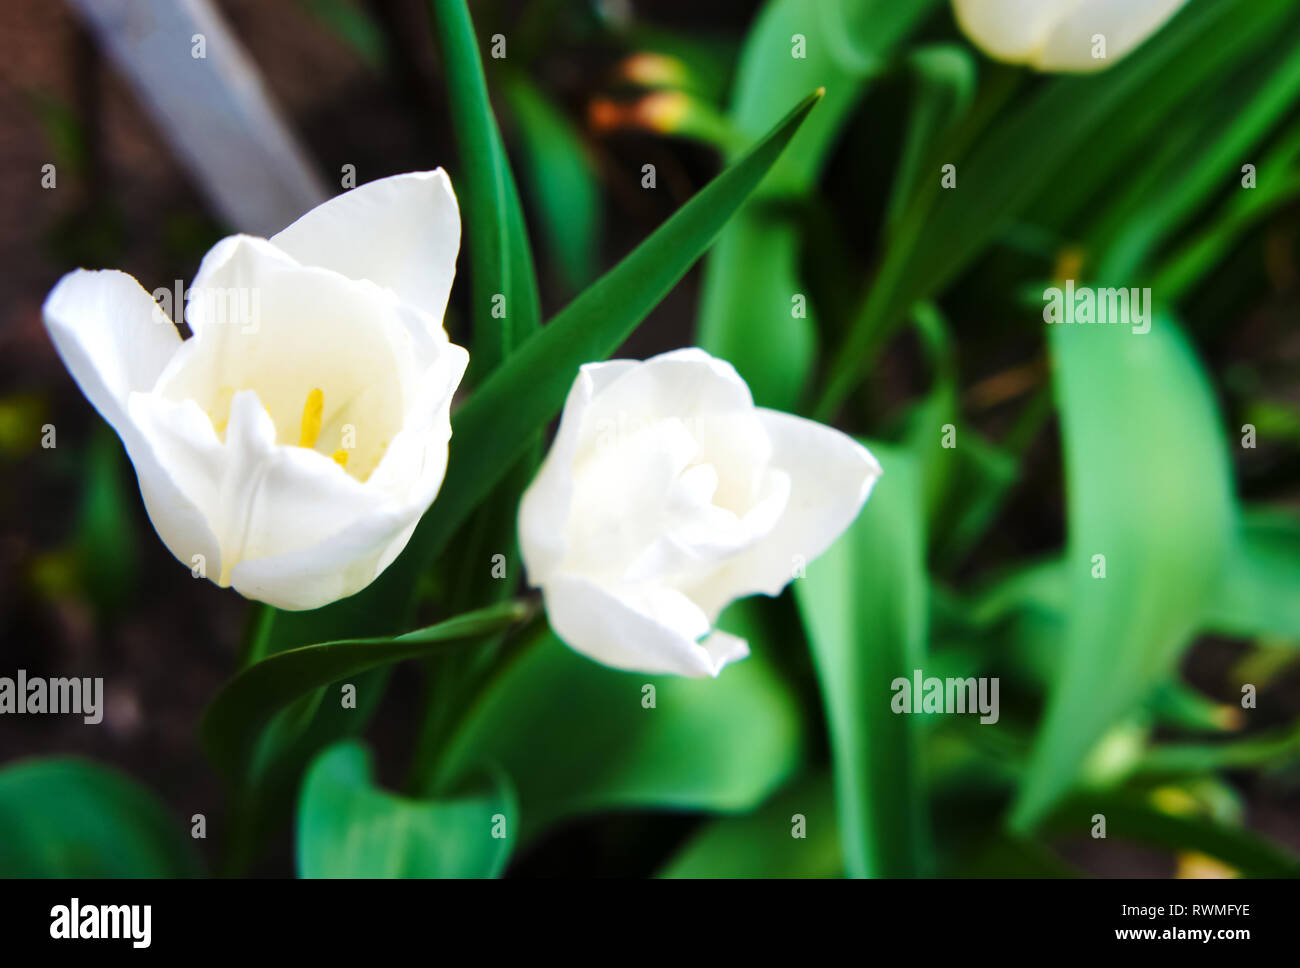 Tulip saison. tulipes blanches dans le jardin close-up. Banque D'Images